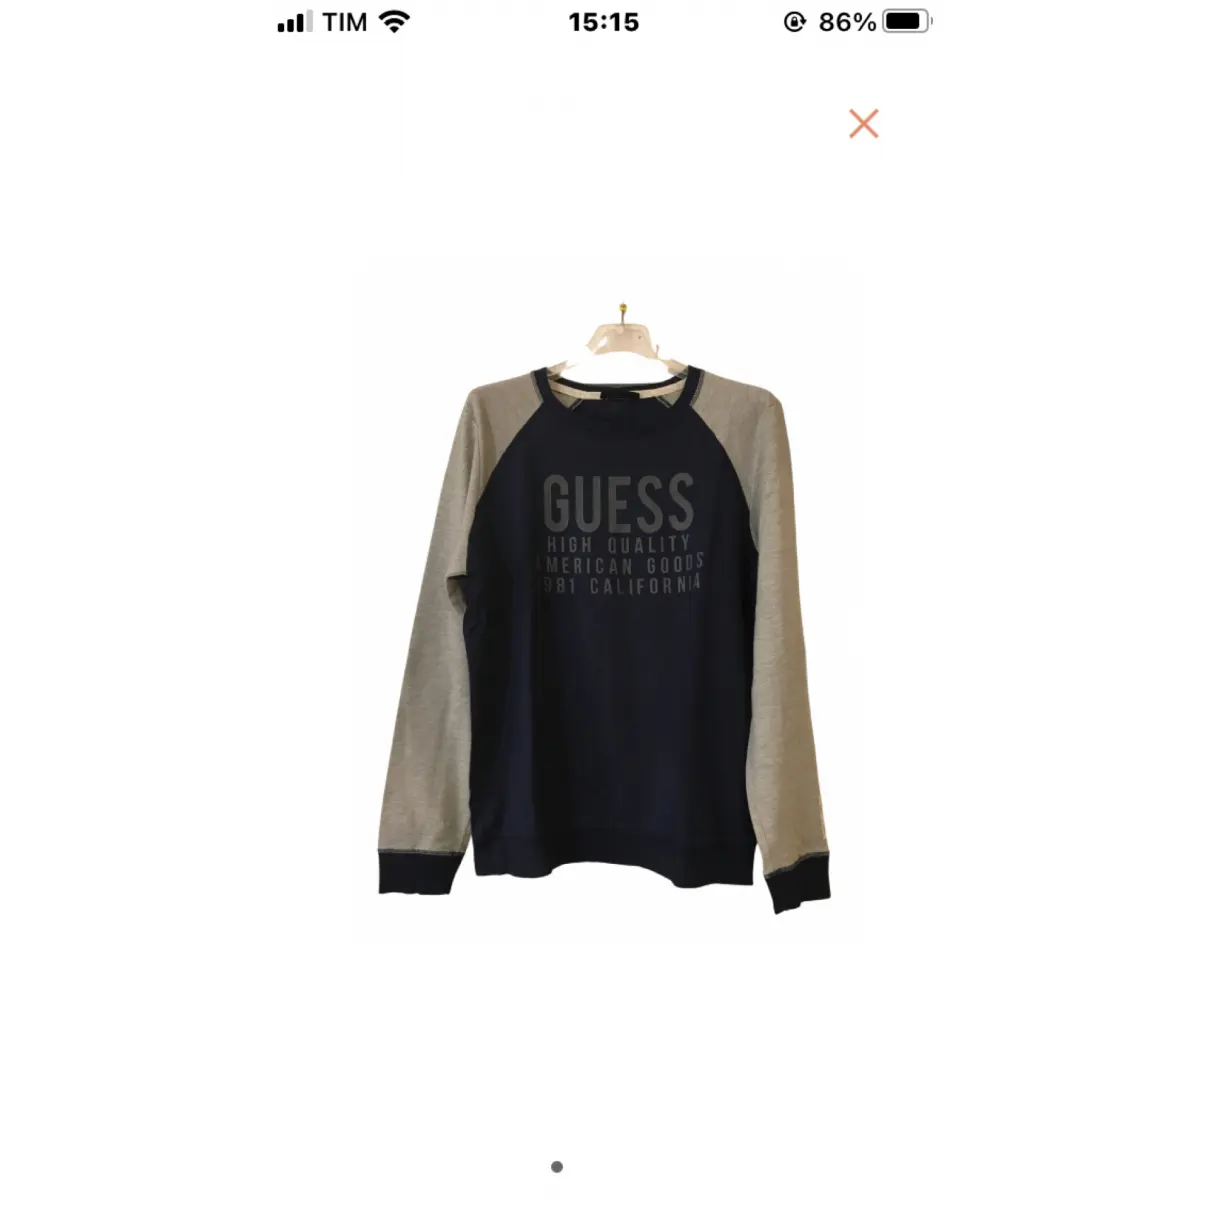 Buy GUESS Sweatshirt online